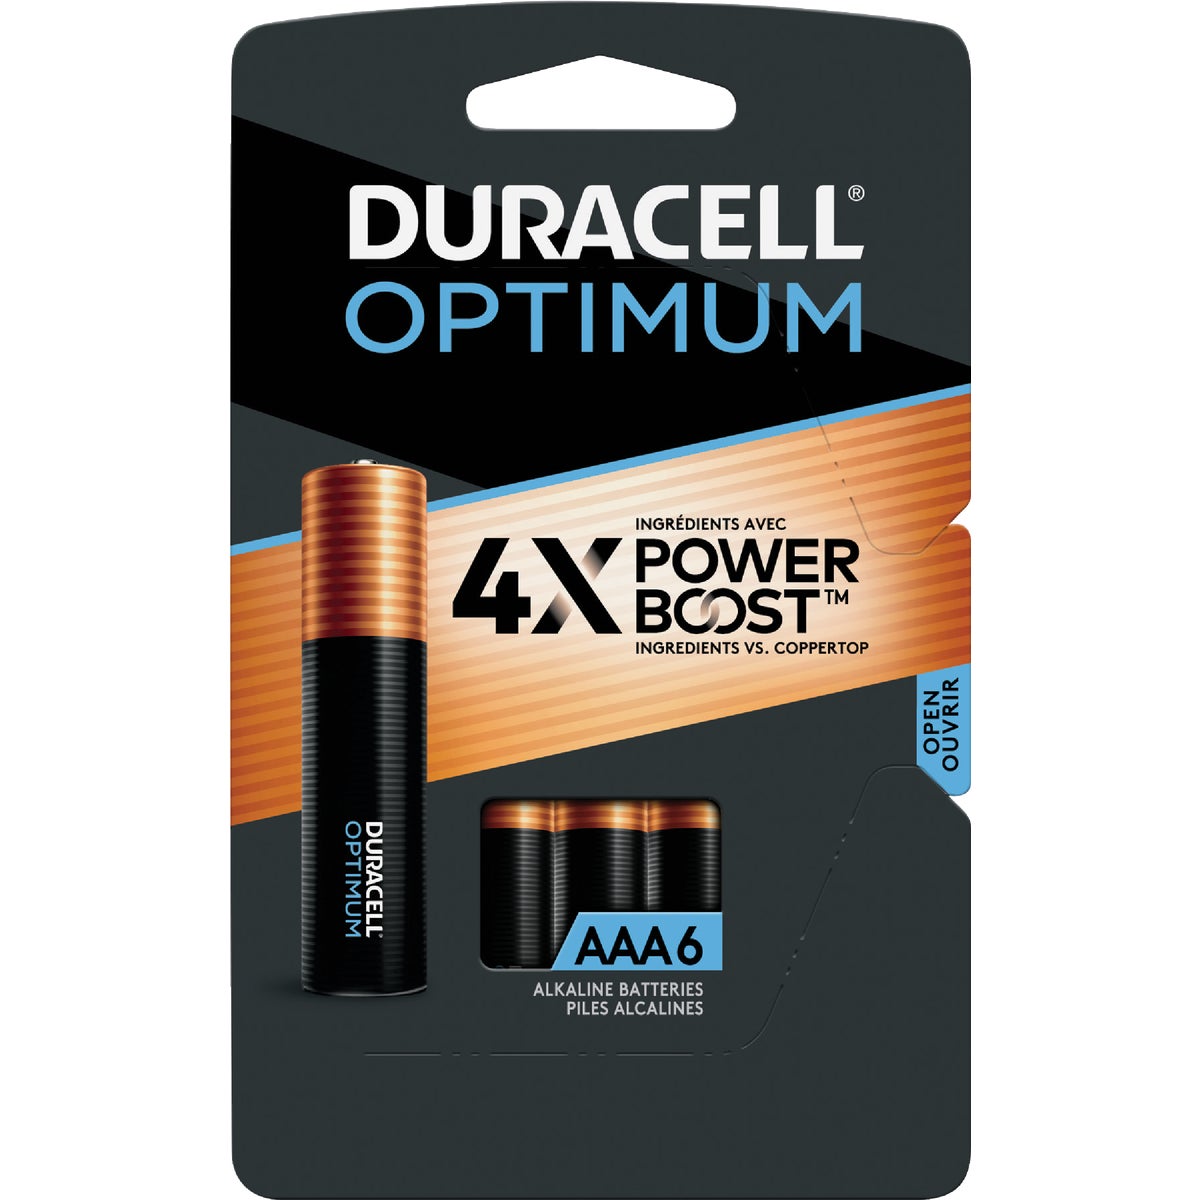 Duracell Optimum AAA Alkaline Battery (6-Pack)